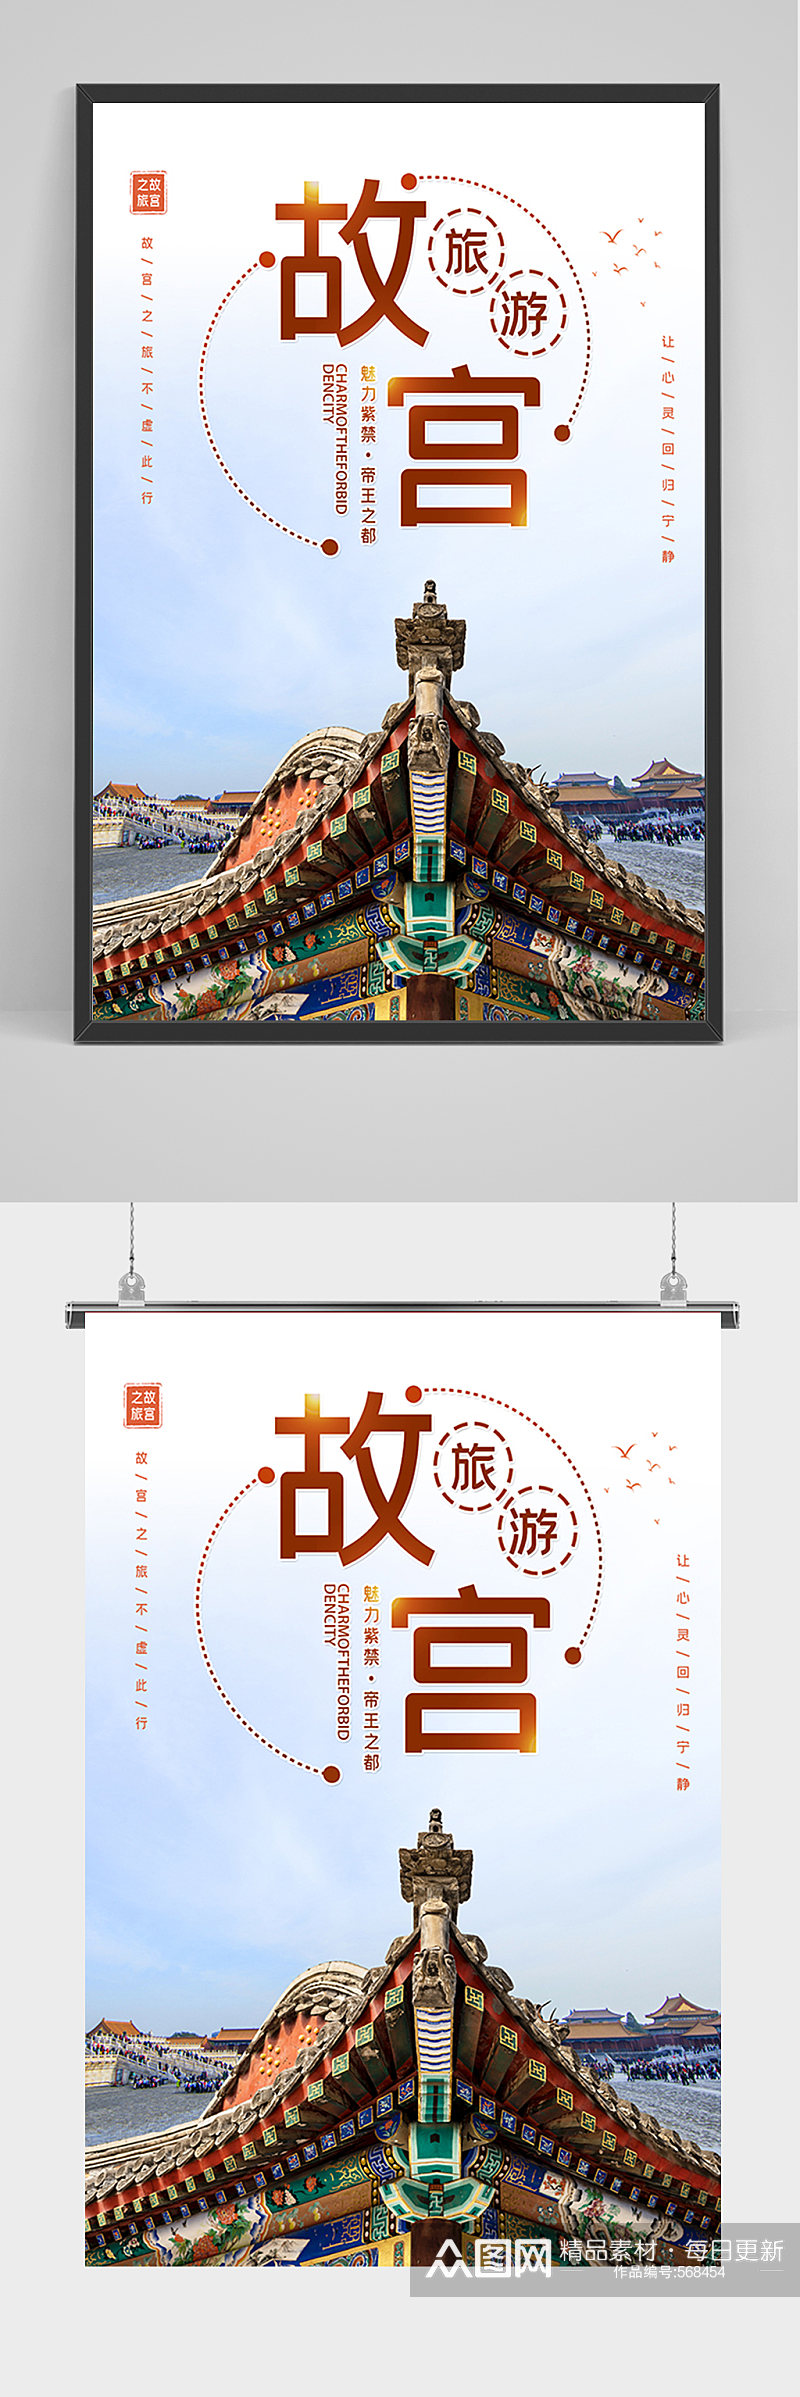 旅游故宫宣传海报素材